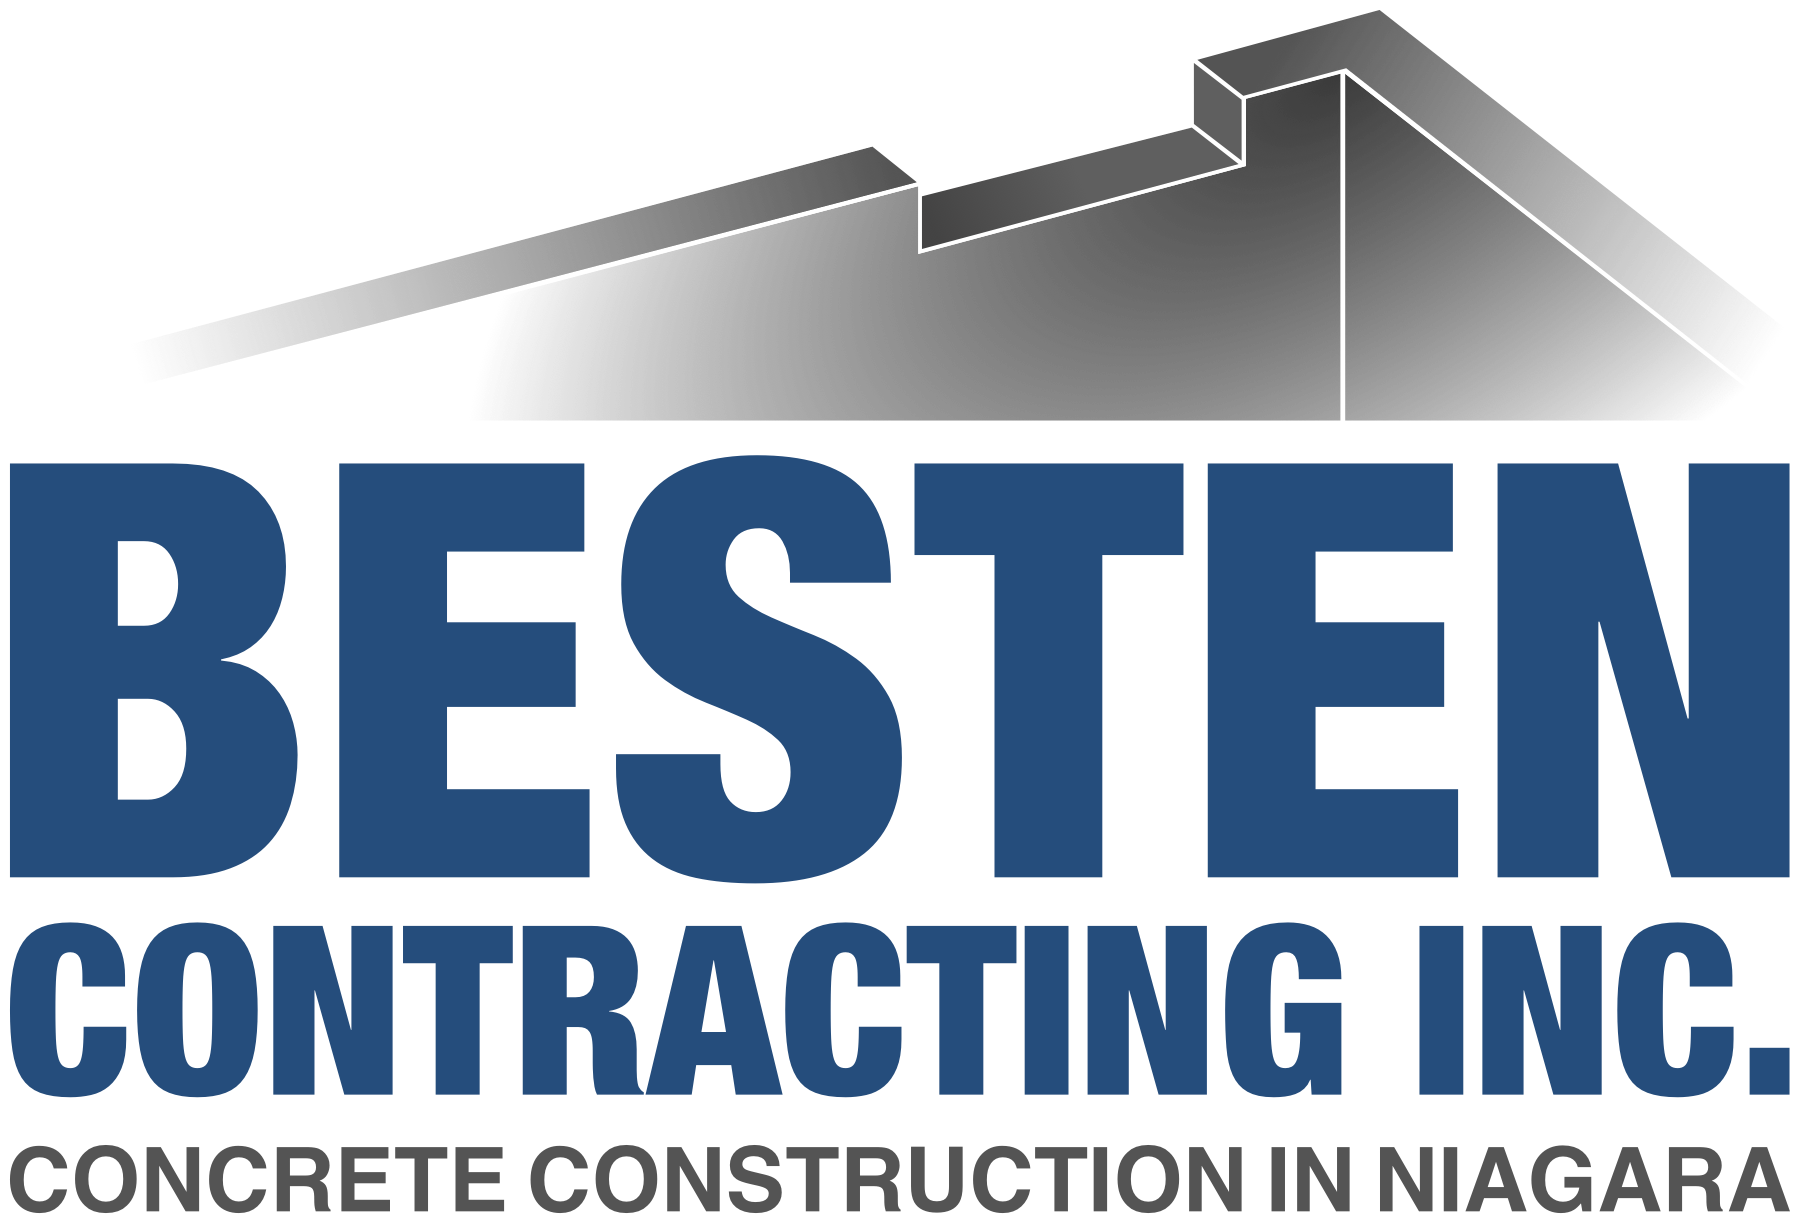 Besten Contracting Inc. Concrete Construction in Niagara